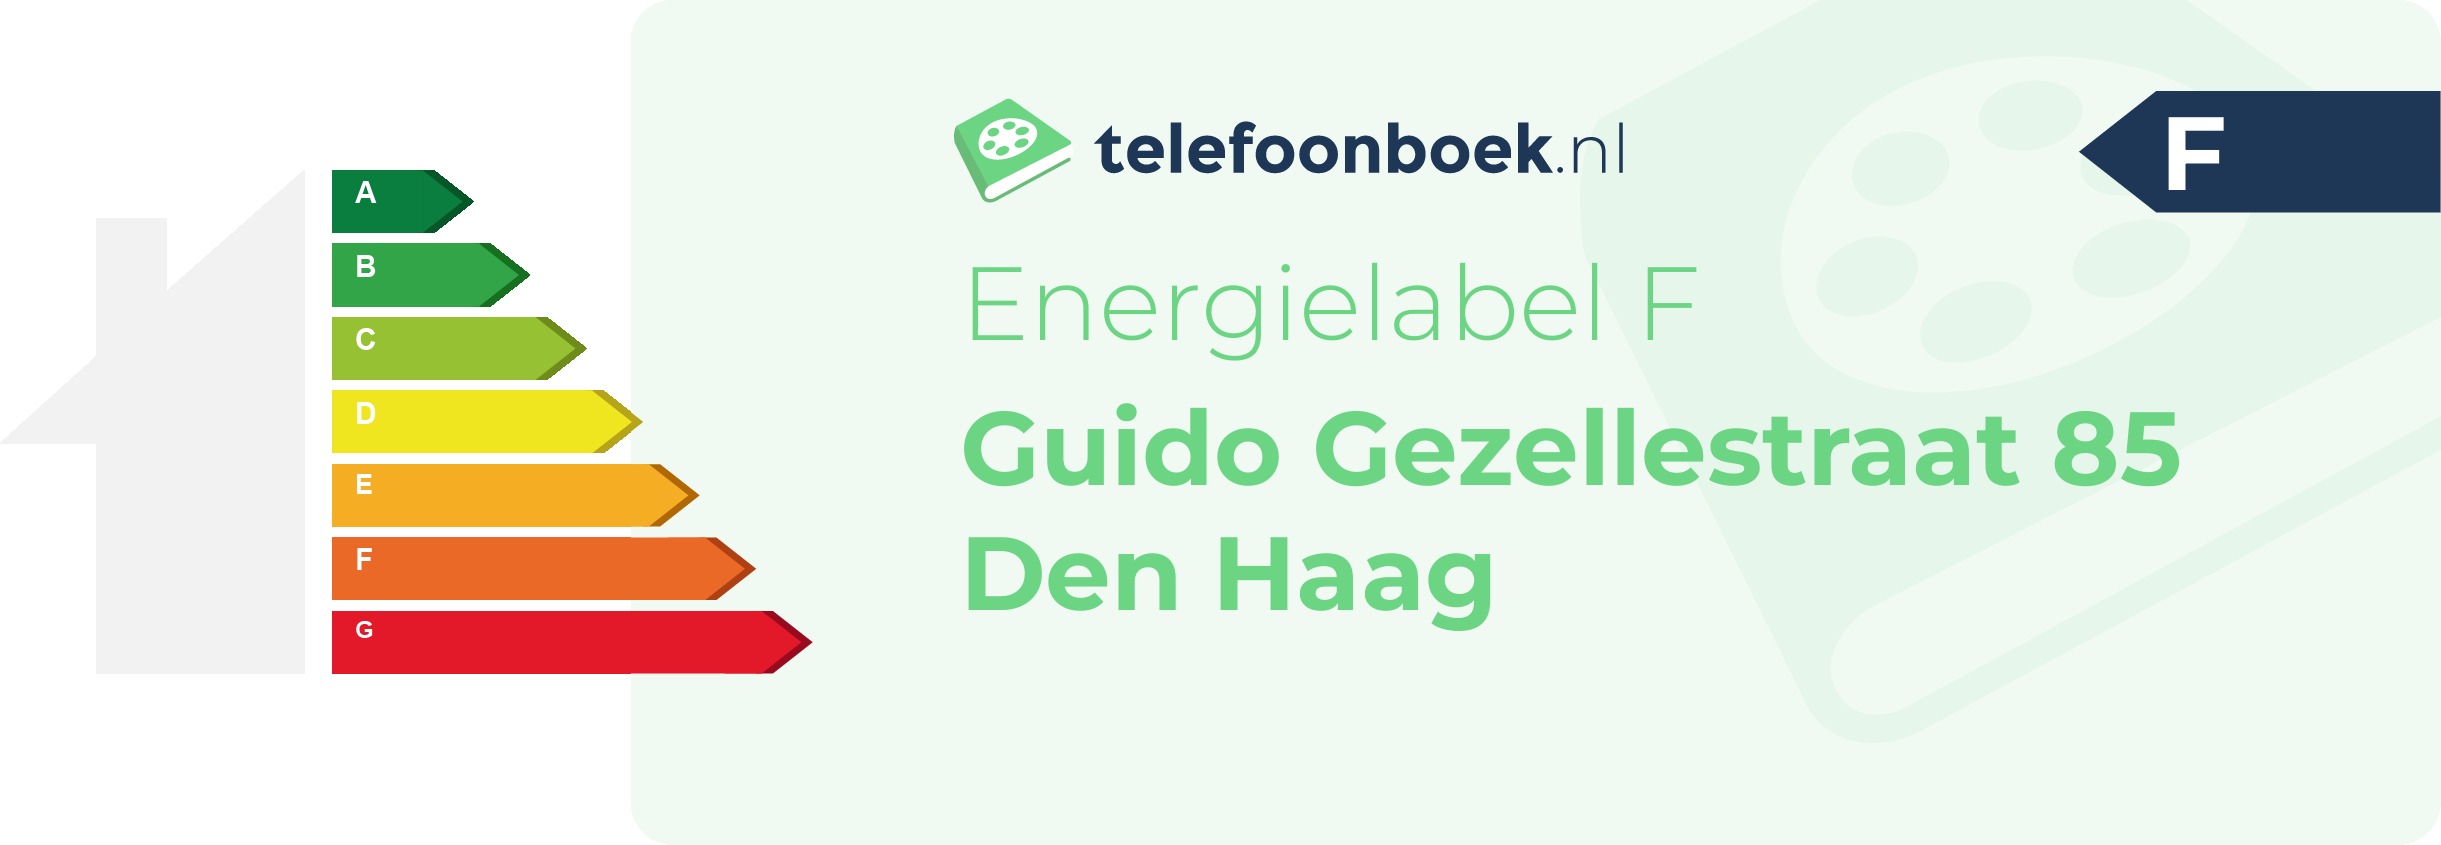 Energielabel Guido Gezellestraat 85 Den Haag